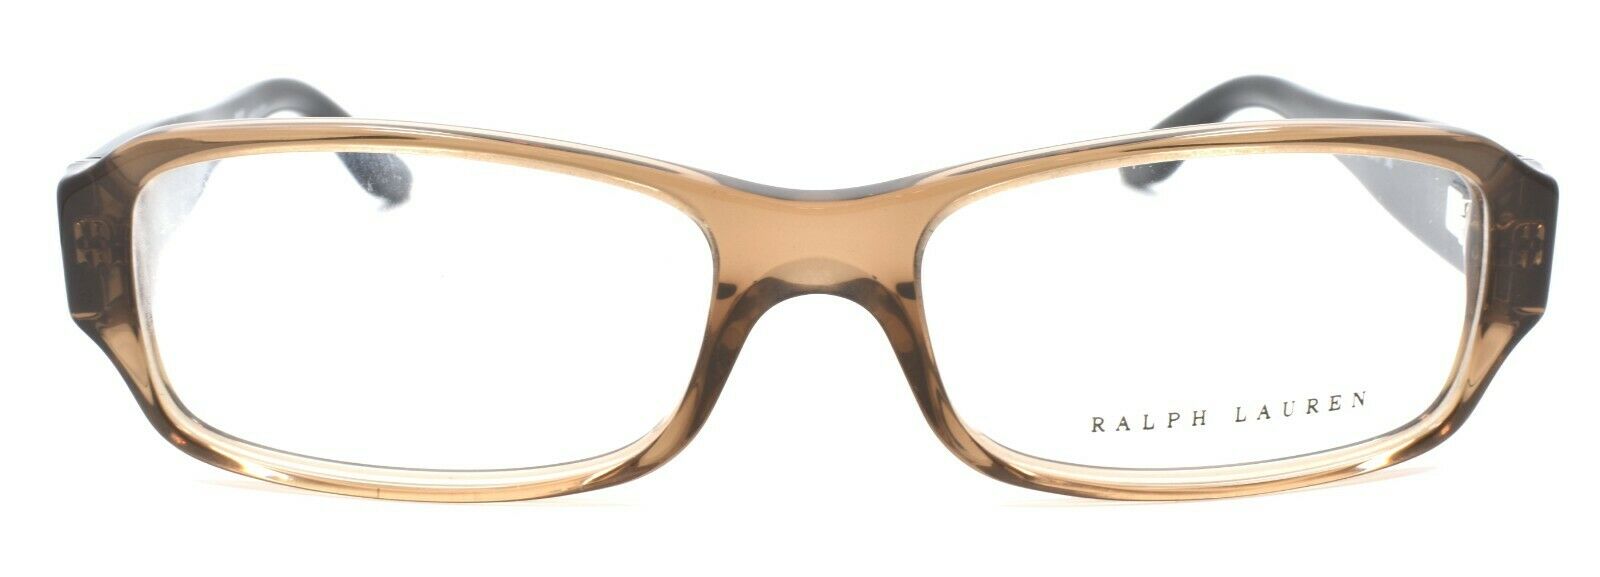 2-Ralph Lauren RL6121B 5217 Women's Eyeglasses Frames 52-16-140 Transparent Brown-Does not apply-IKSpecs